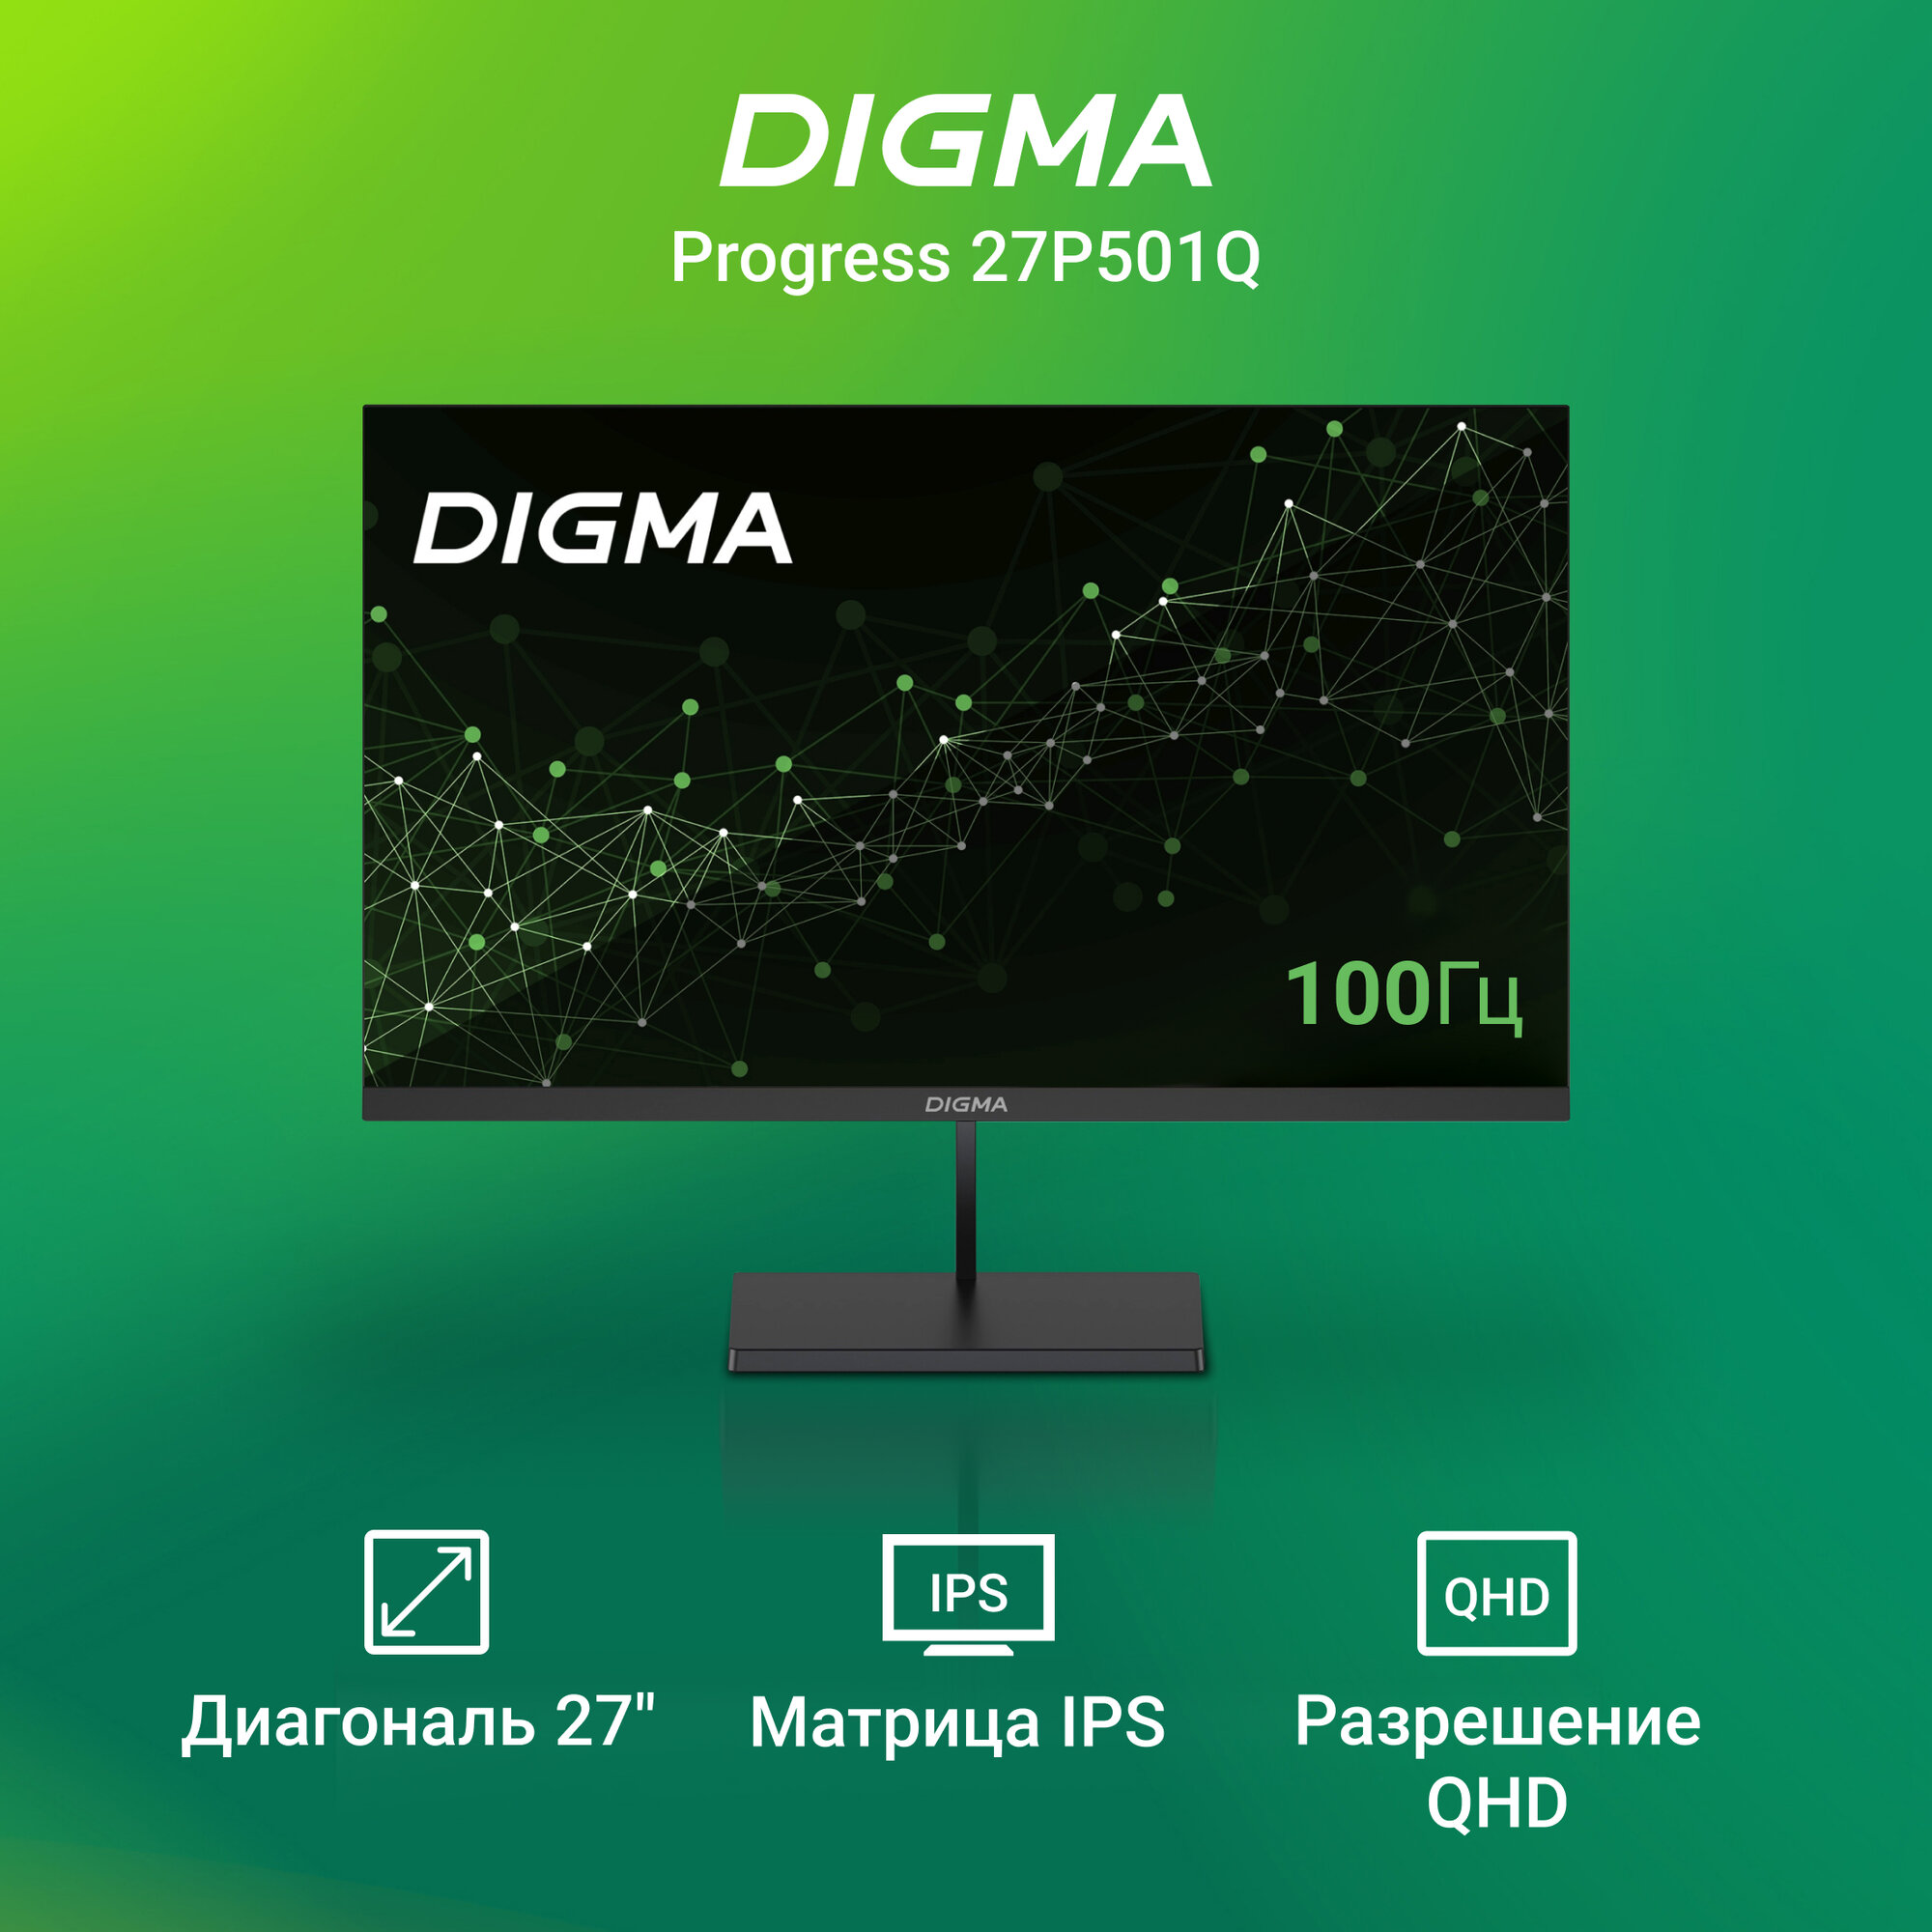 Монитор Digma 27", Progress 27P501Q 1440x2560, с частотой 100 Гц, антибликовое покрытие, чеерный